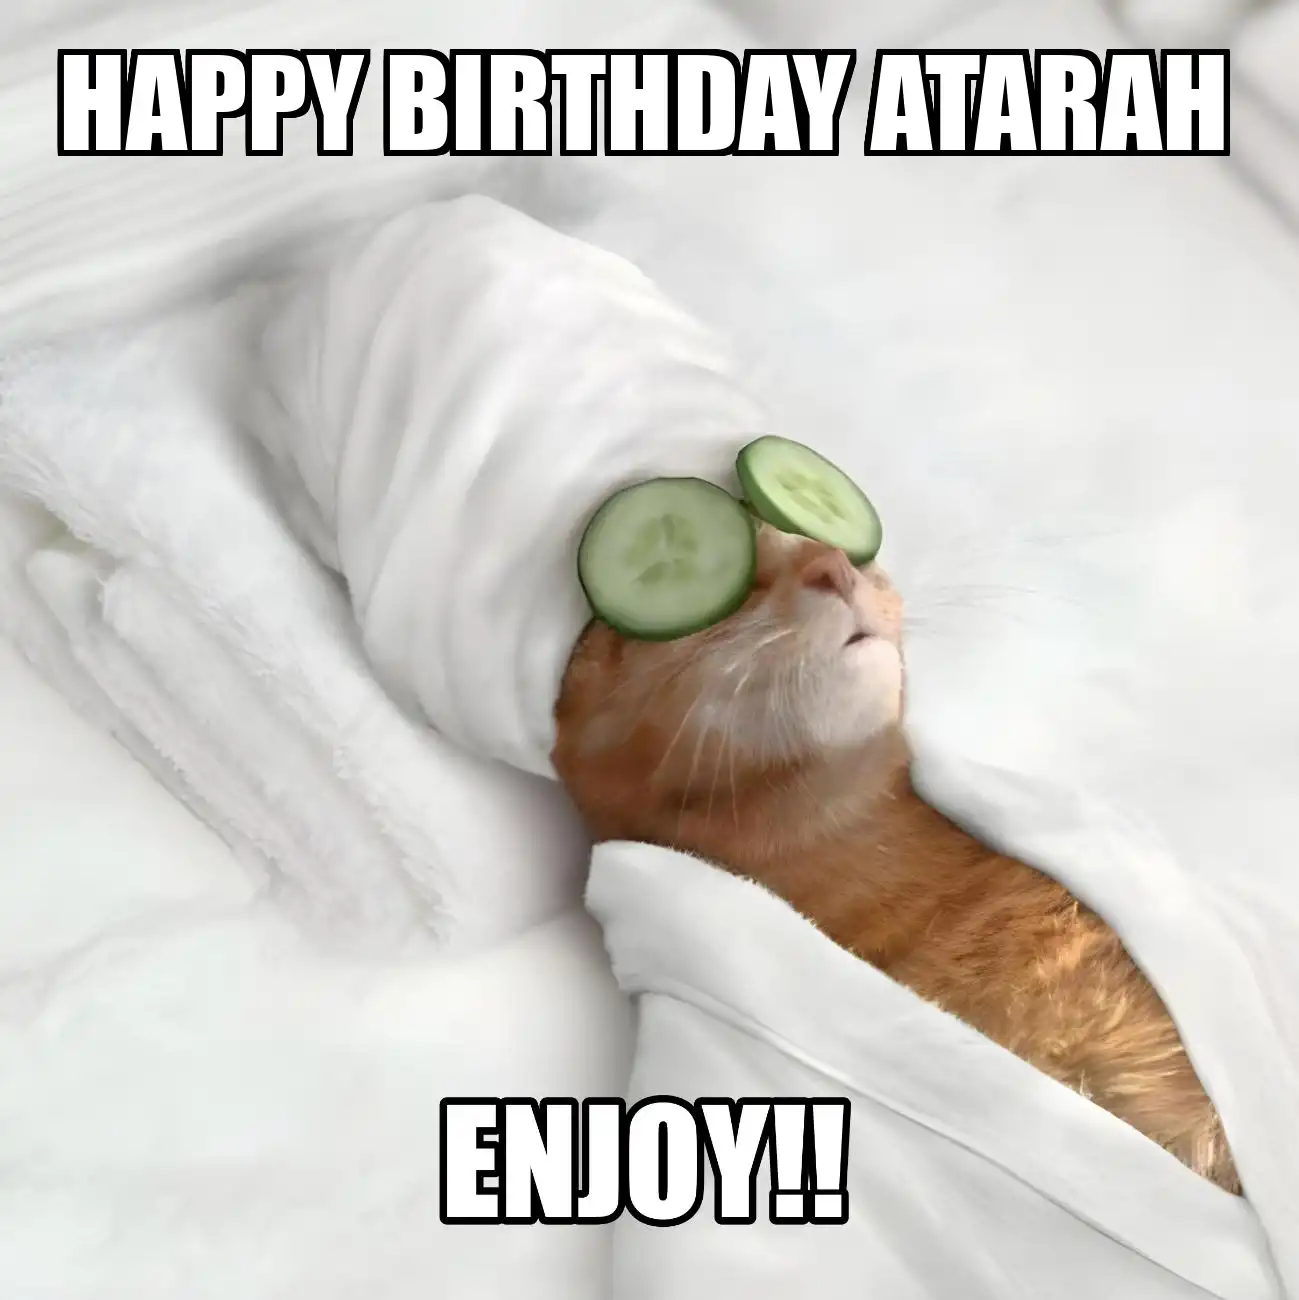 Happy Birthday Atarah Enjoy Cat Meme